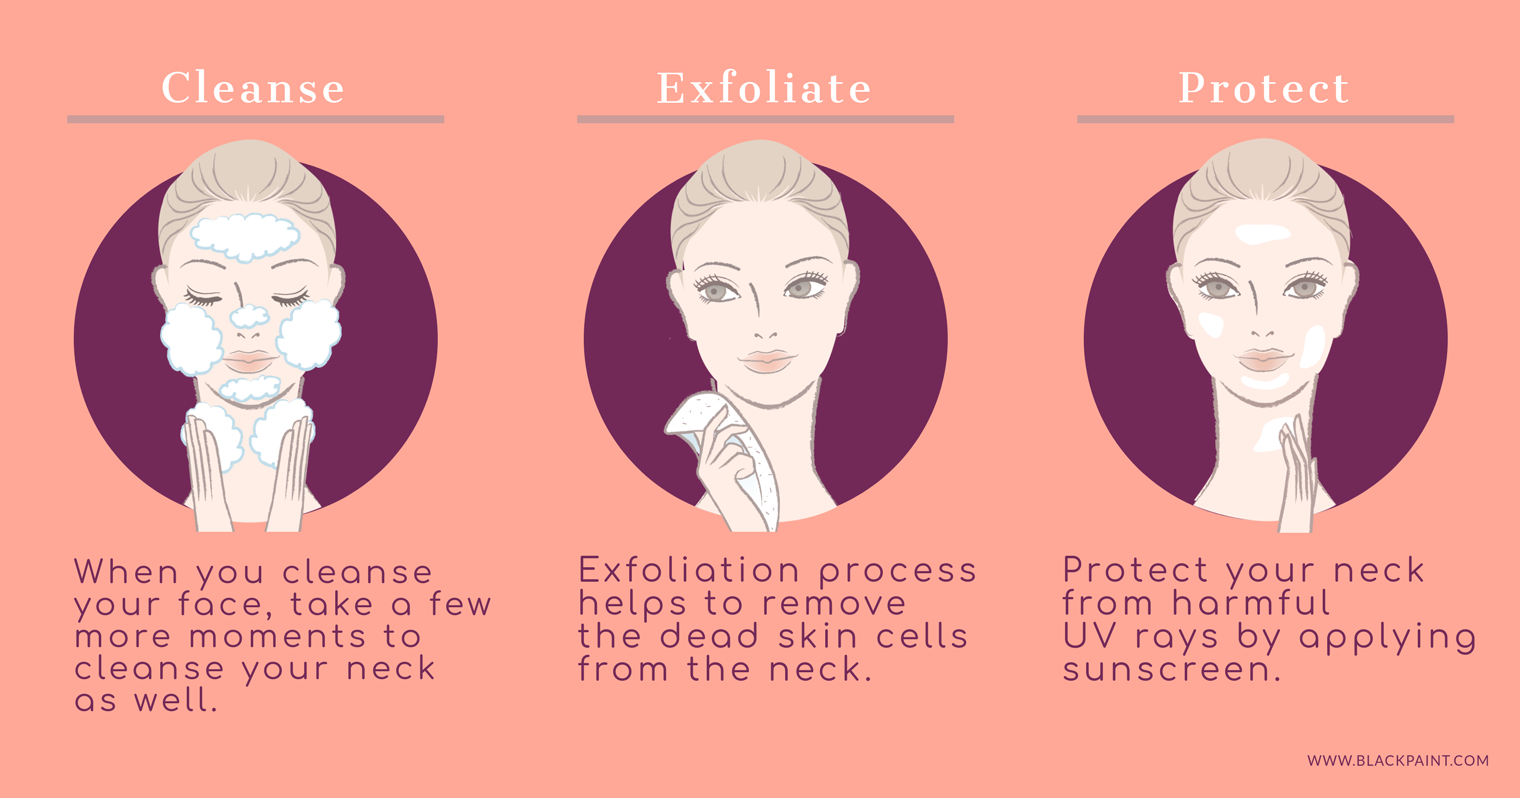 Easy basic methods to prevent neck wrinkles